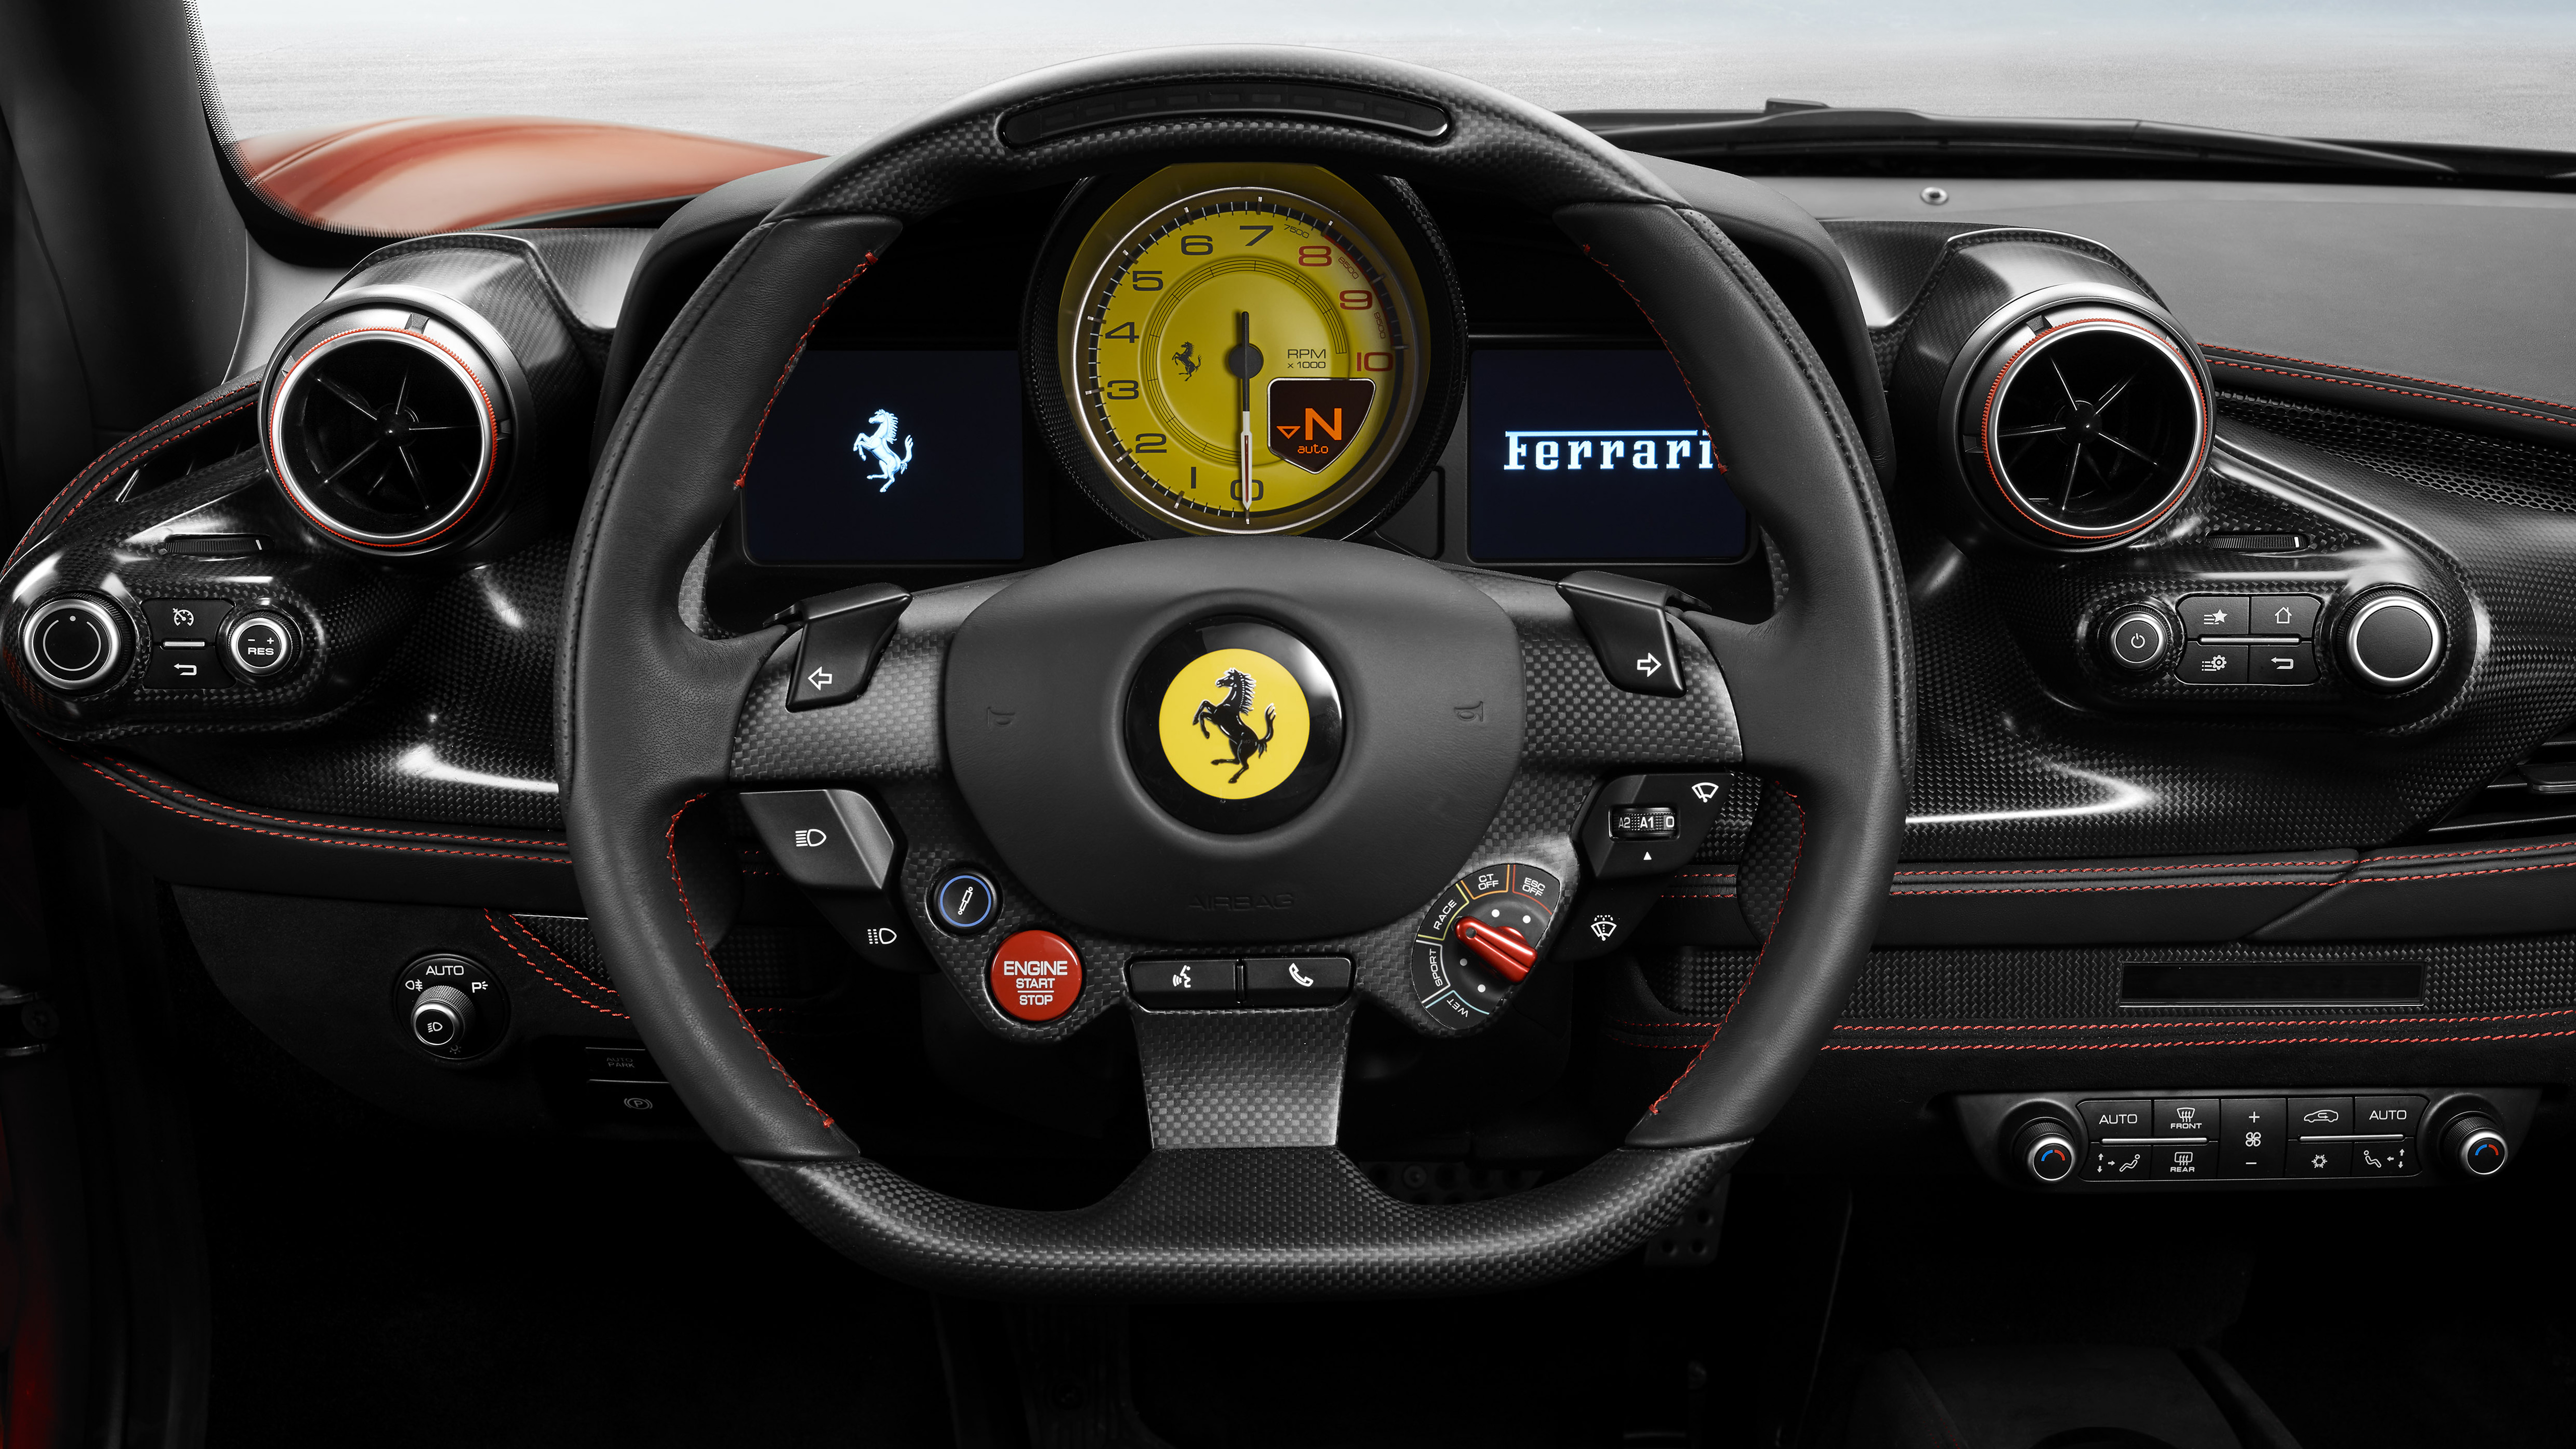 Ferrari F8 Tributo 2019 Interior 5K Wallpapers